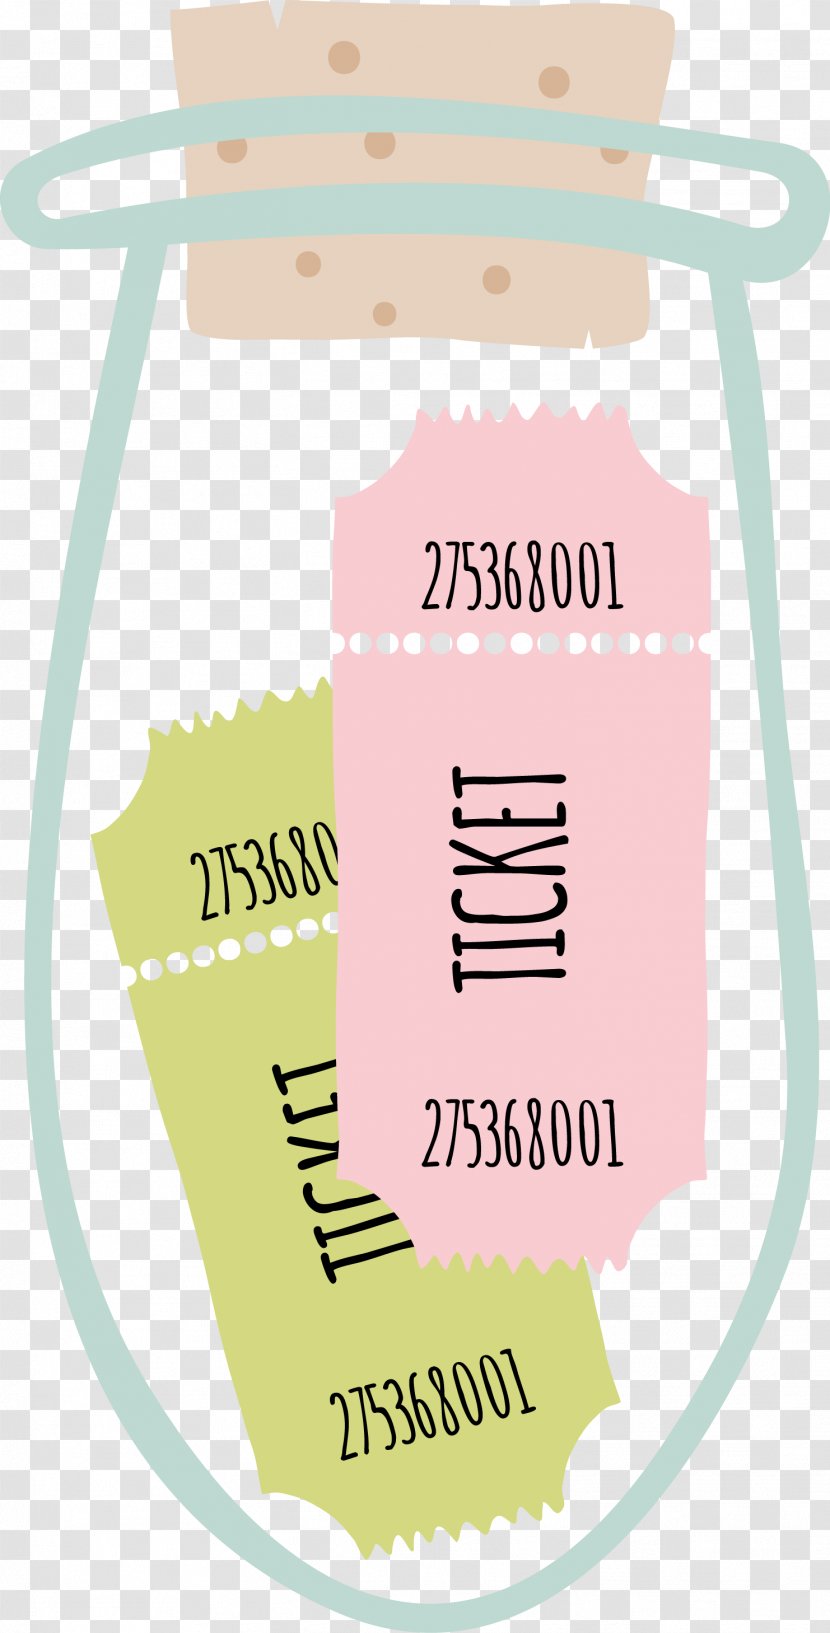 Design Image Adobe Photoshop Vector Graphics - Label - Boce Stamp Transparent PNG